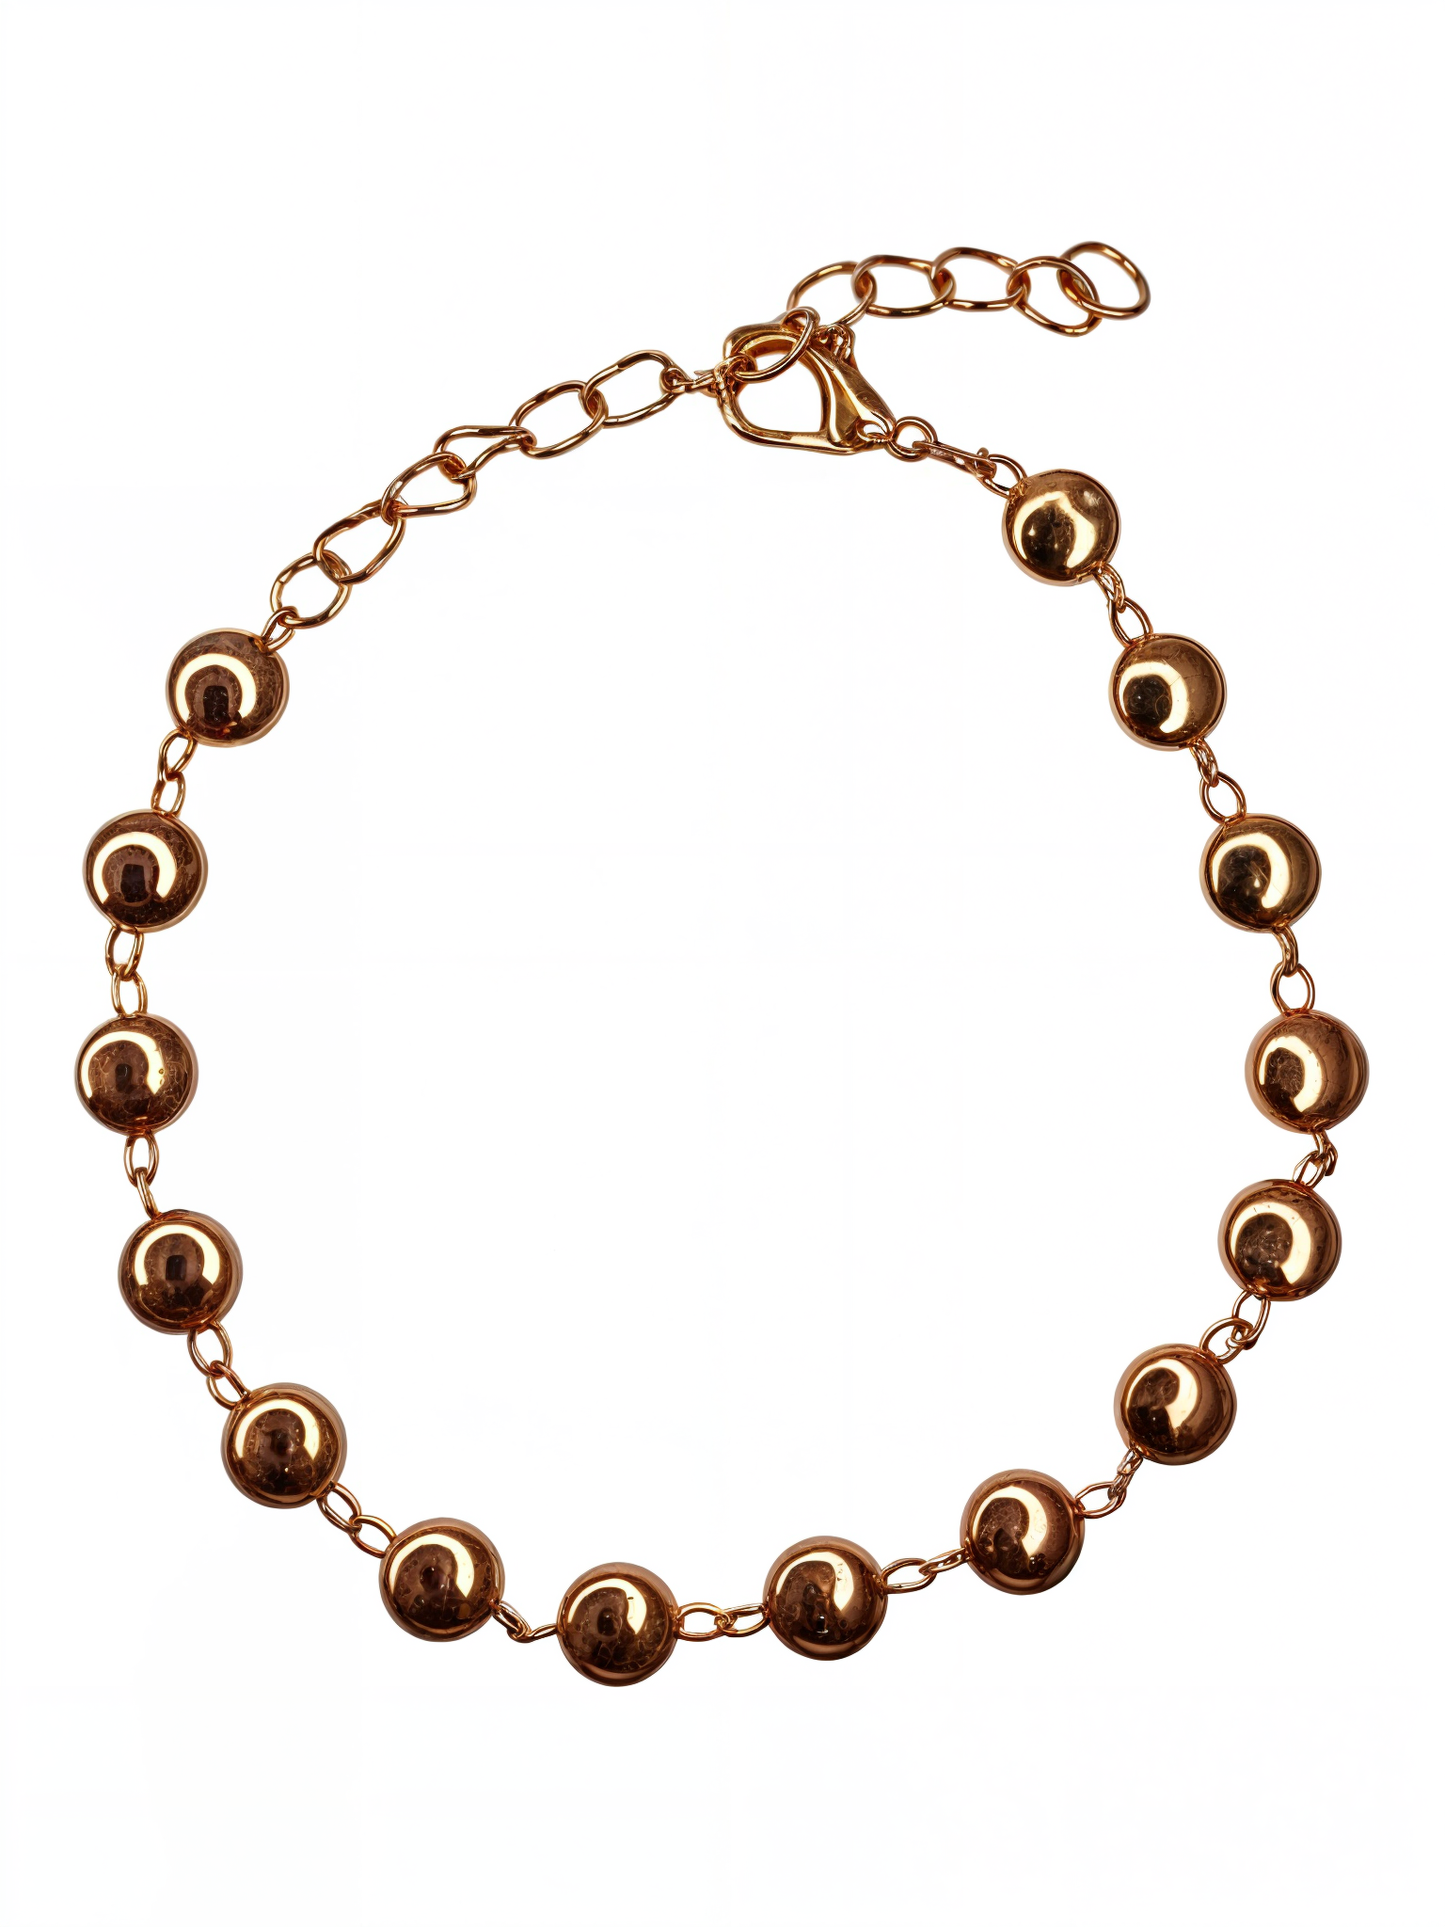 Adjustable Golden Plated Pearl Bracelet